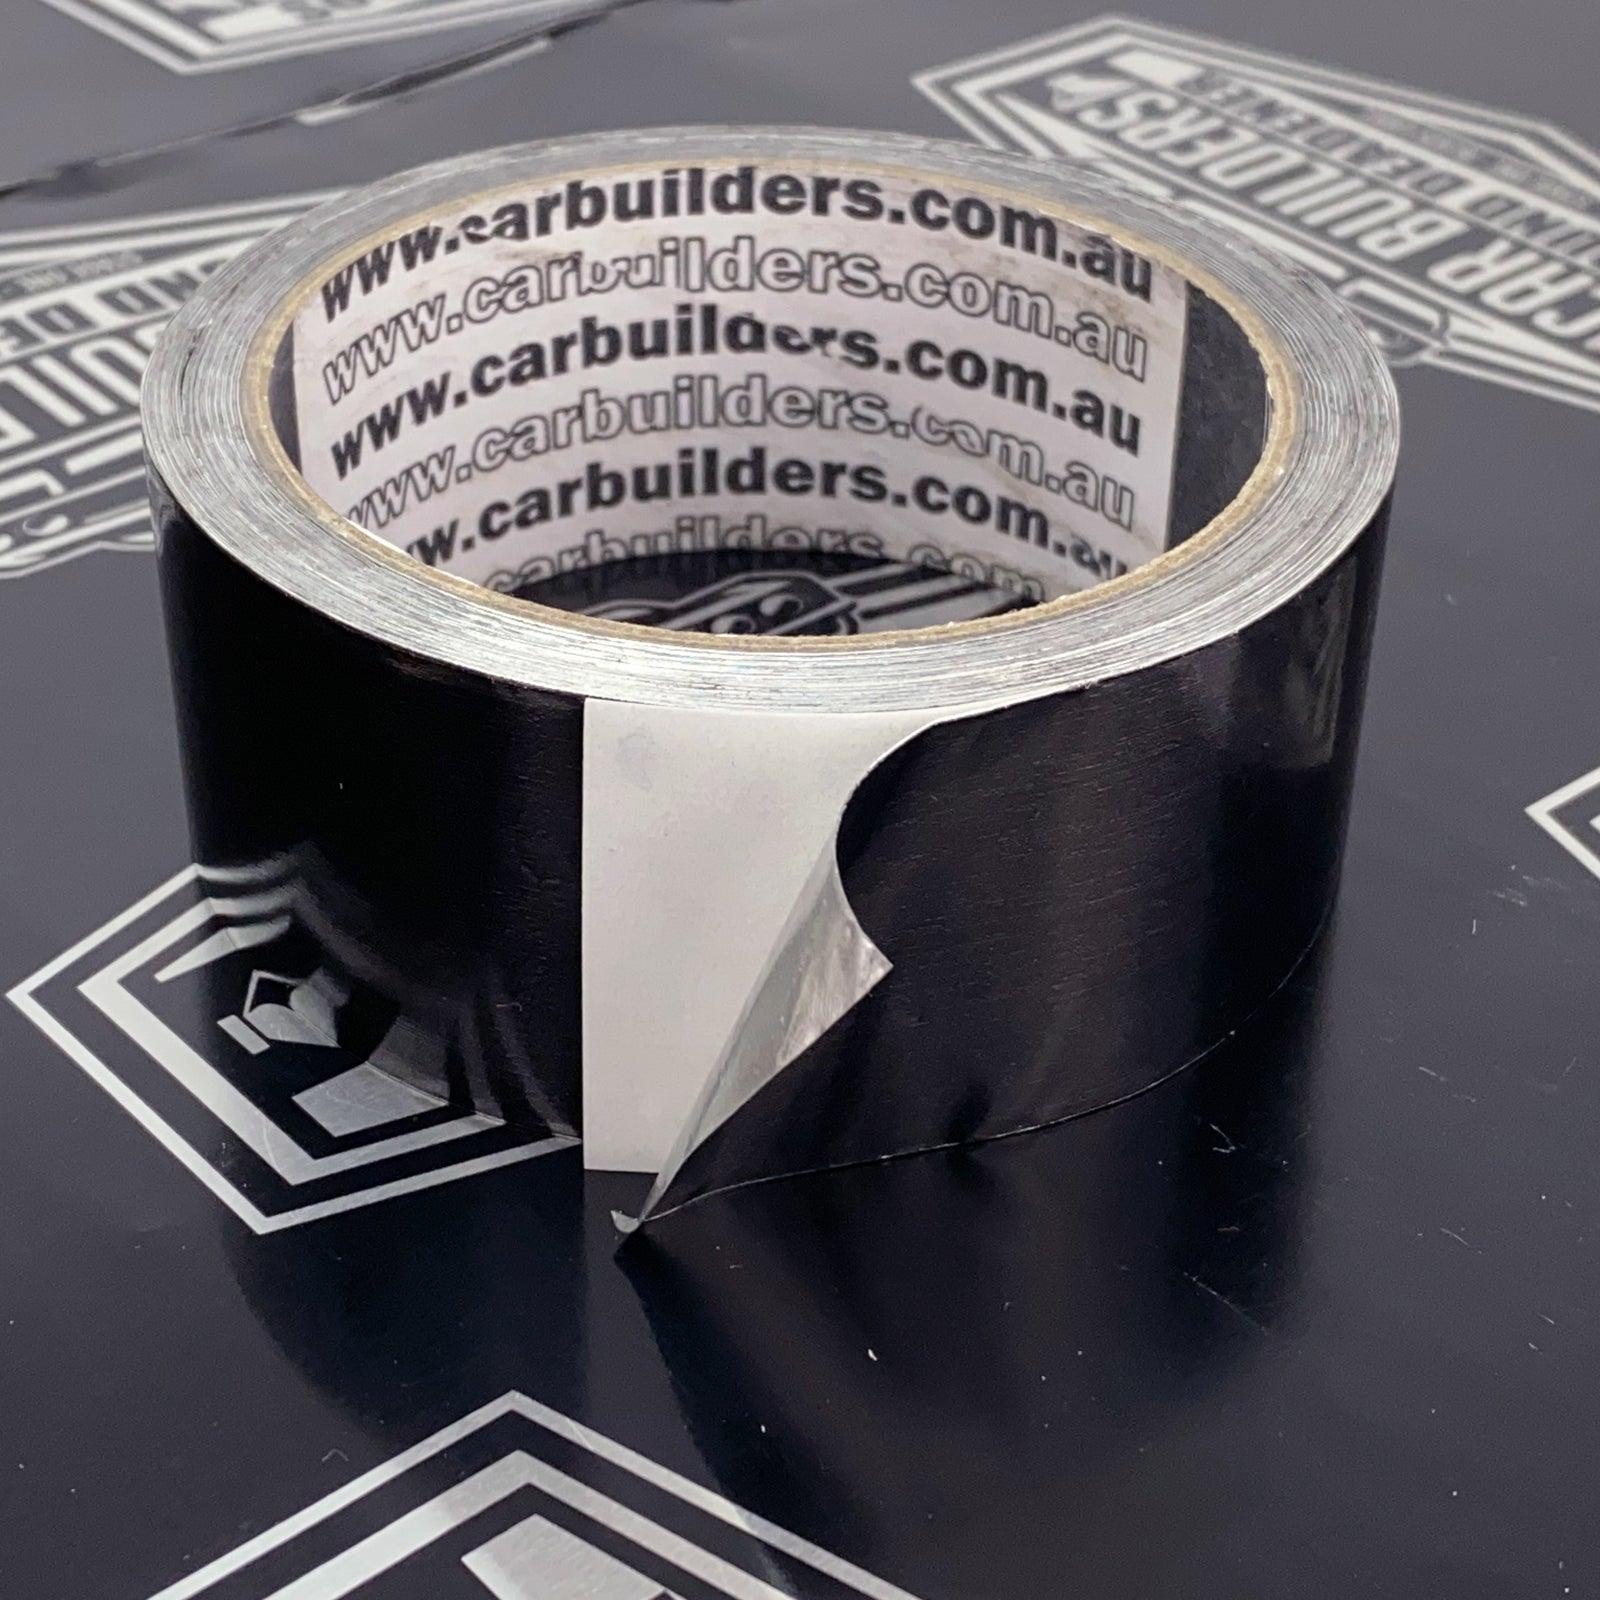 Car Builders - Aluminium Foil Tape - 4X4OC™